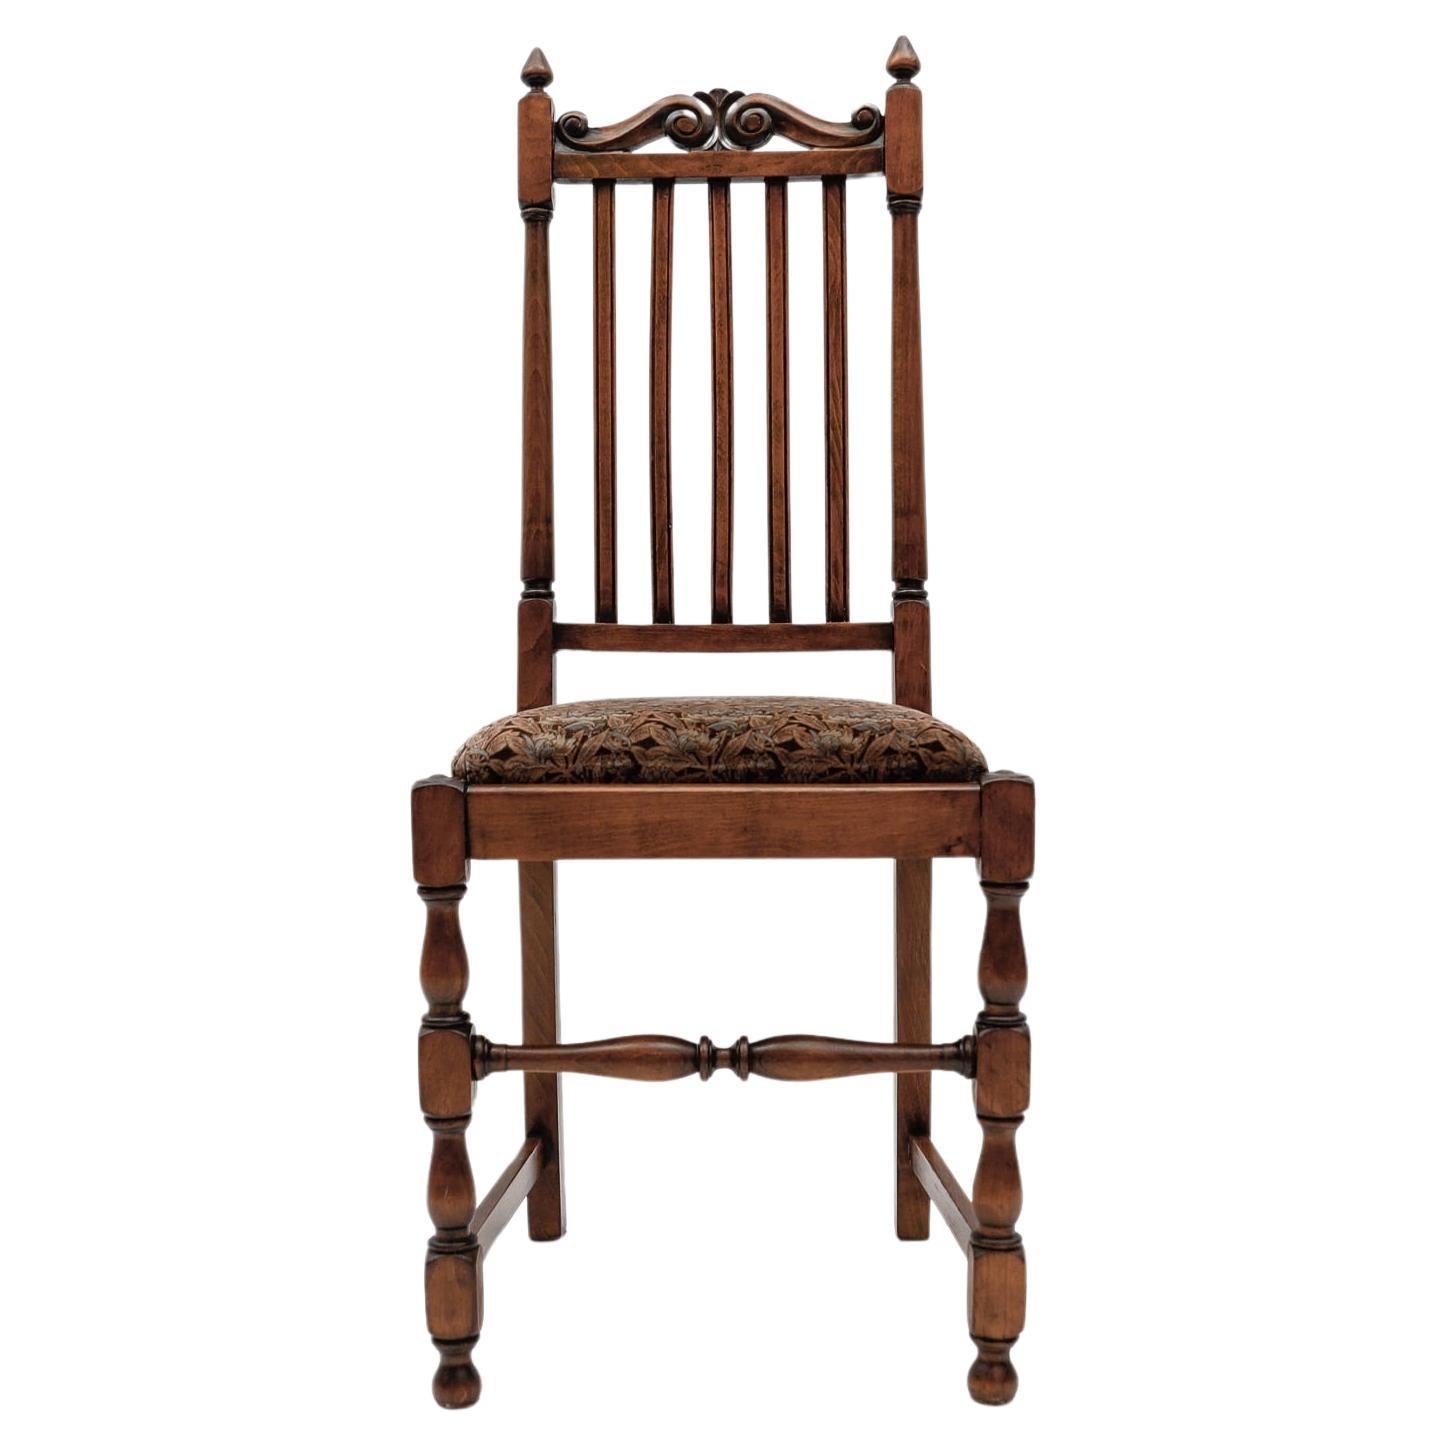 Antique Belle Époque Wooden Chair, 1900s Austria For Sale